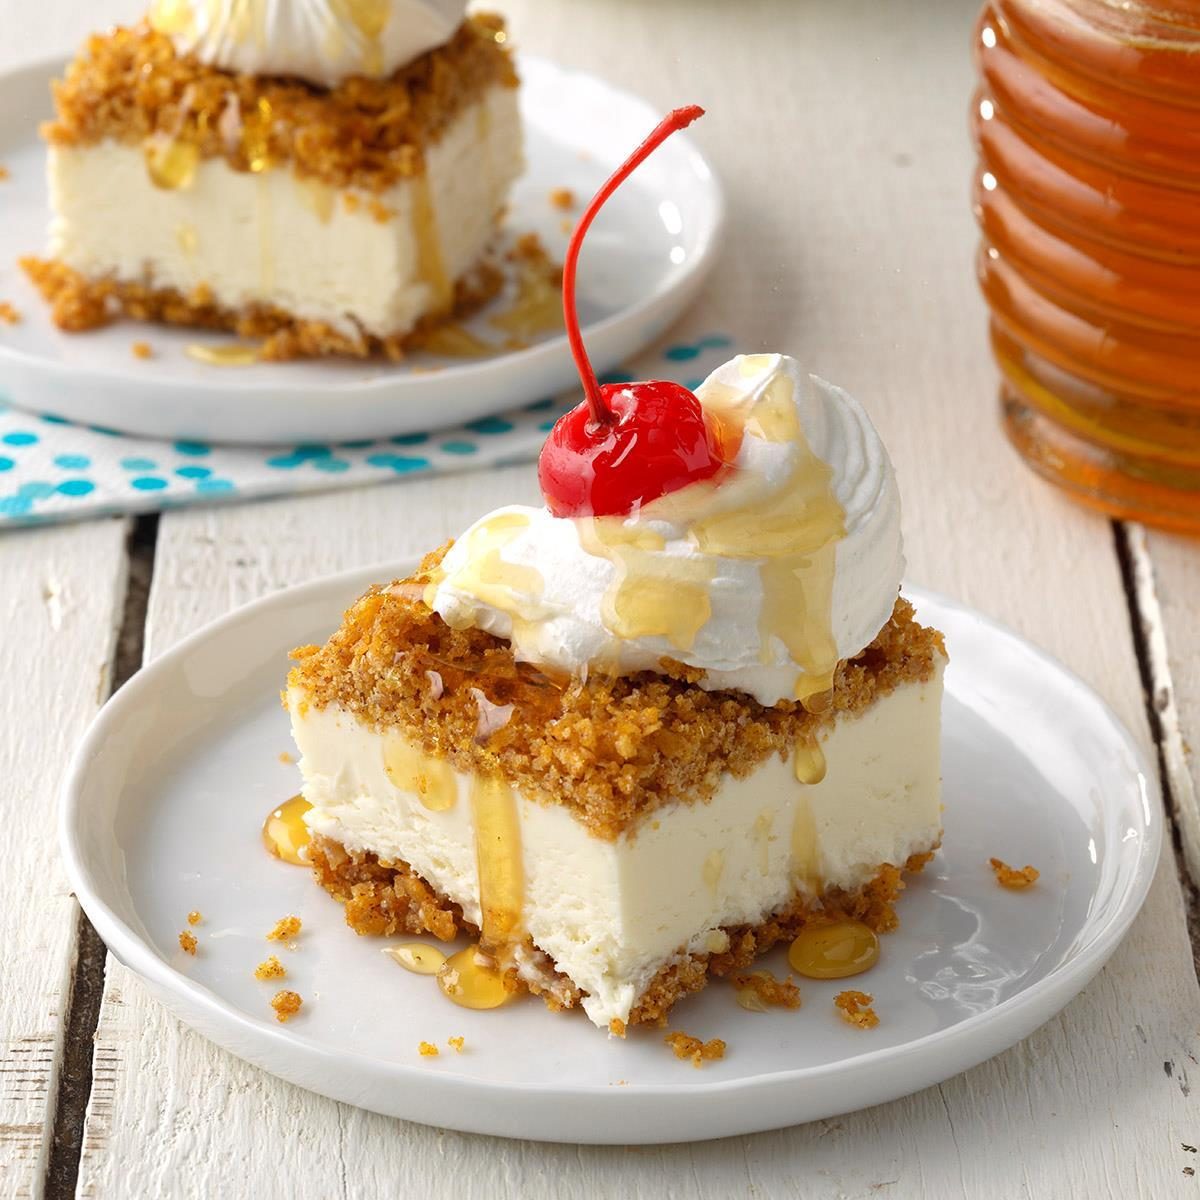 https://www.tasteofhome.com/wp-content/uploads/0001/01/Fried-Ice-Cream-Dessert-Bars-_EXPS_SDJJ19_232652_B02_06_1b_rms.jpg